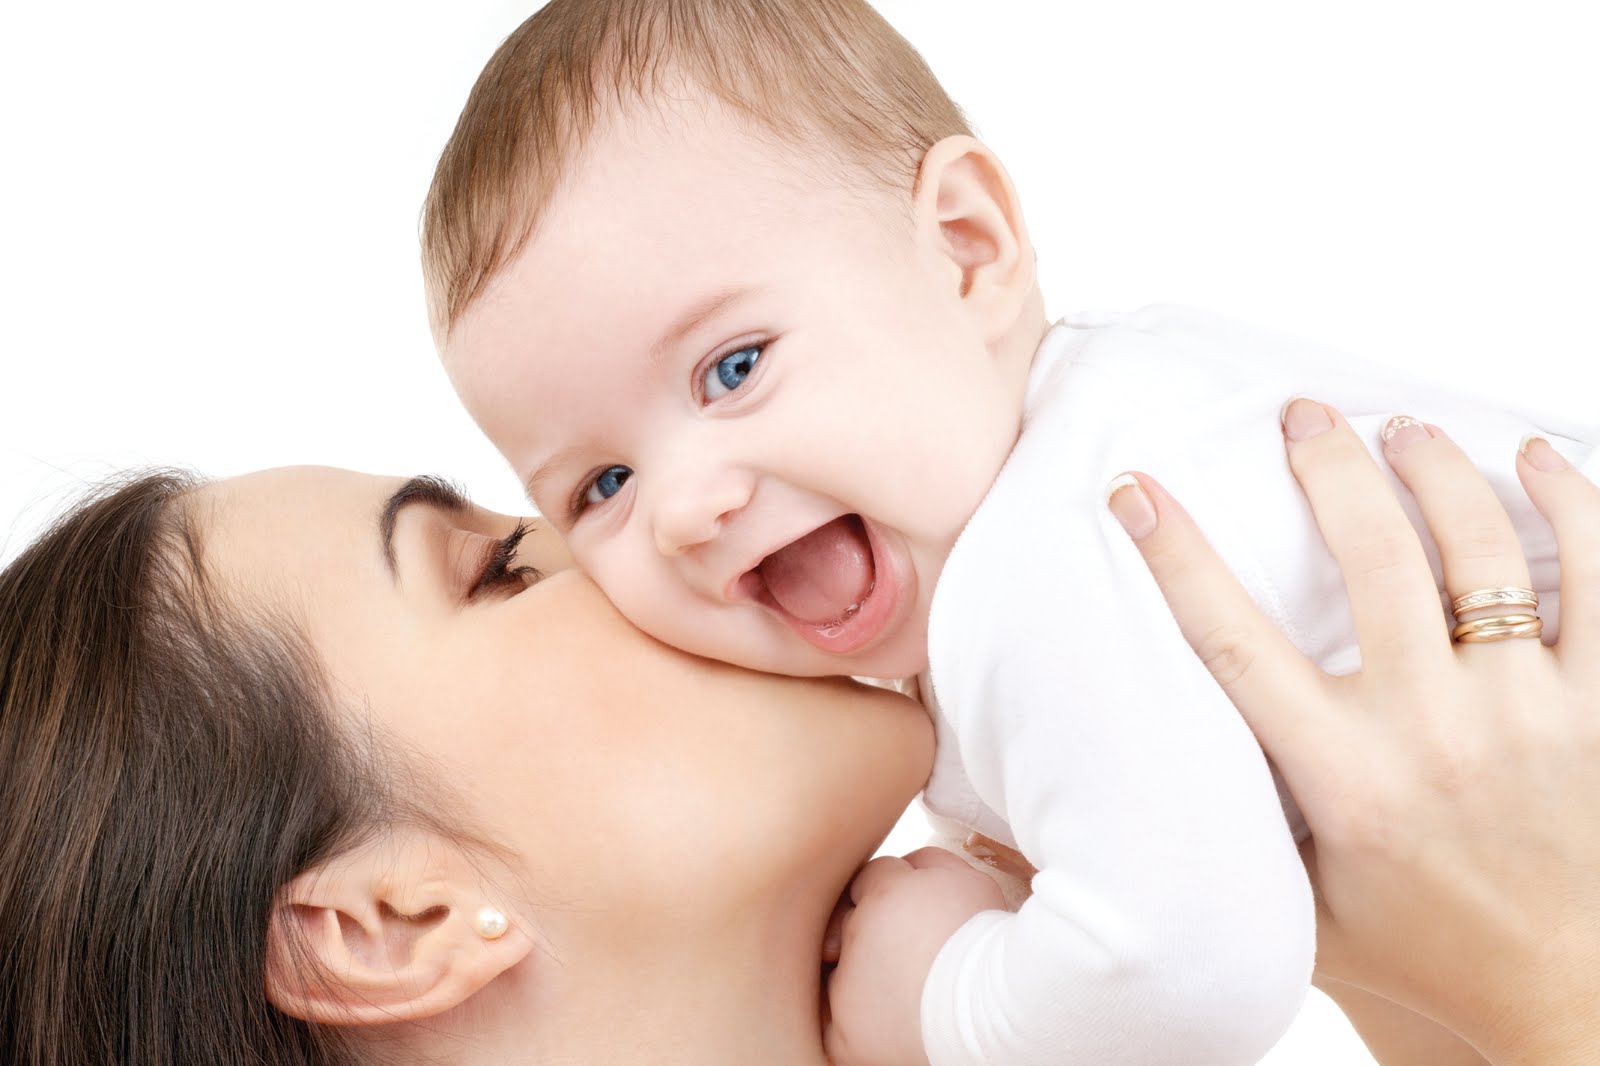 Filhos podem “herdar” características de ex-parceiros da mãe